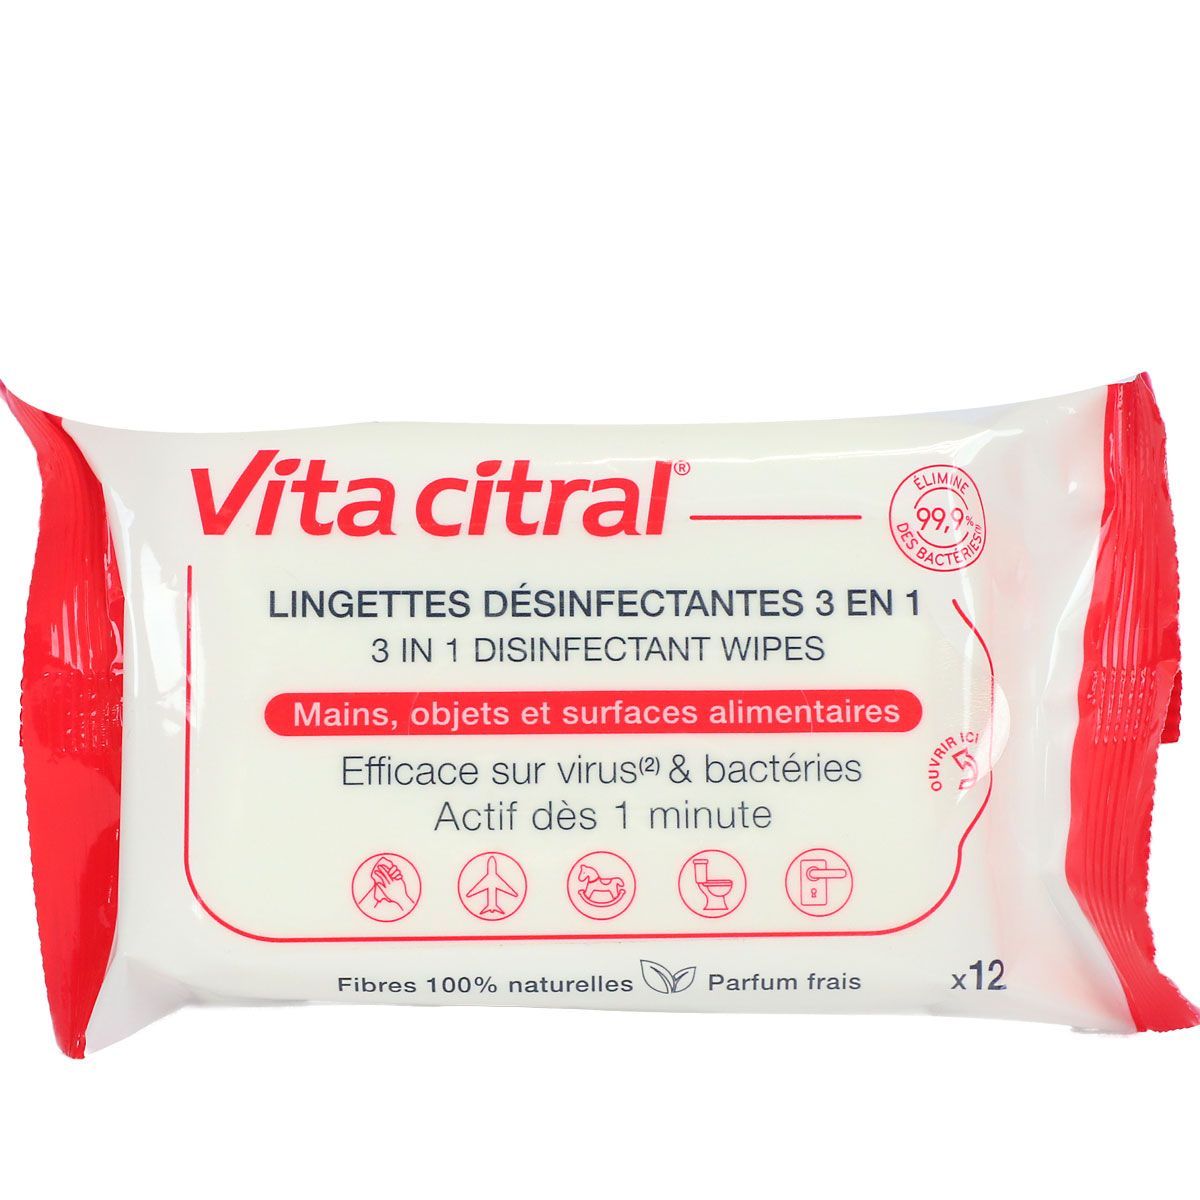 https://www.pharmaforce.fr/resize/600x600/media/finish/img/normal/30/3323030000848-vita-citral-12-lingettes-desinfectantes-3en1-2x.jpg